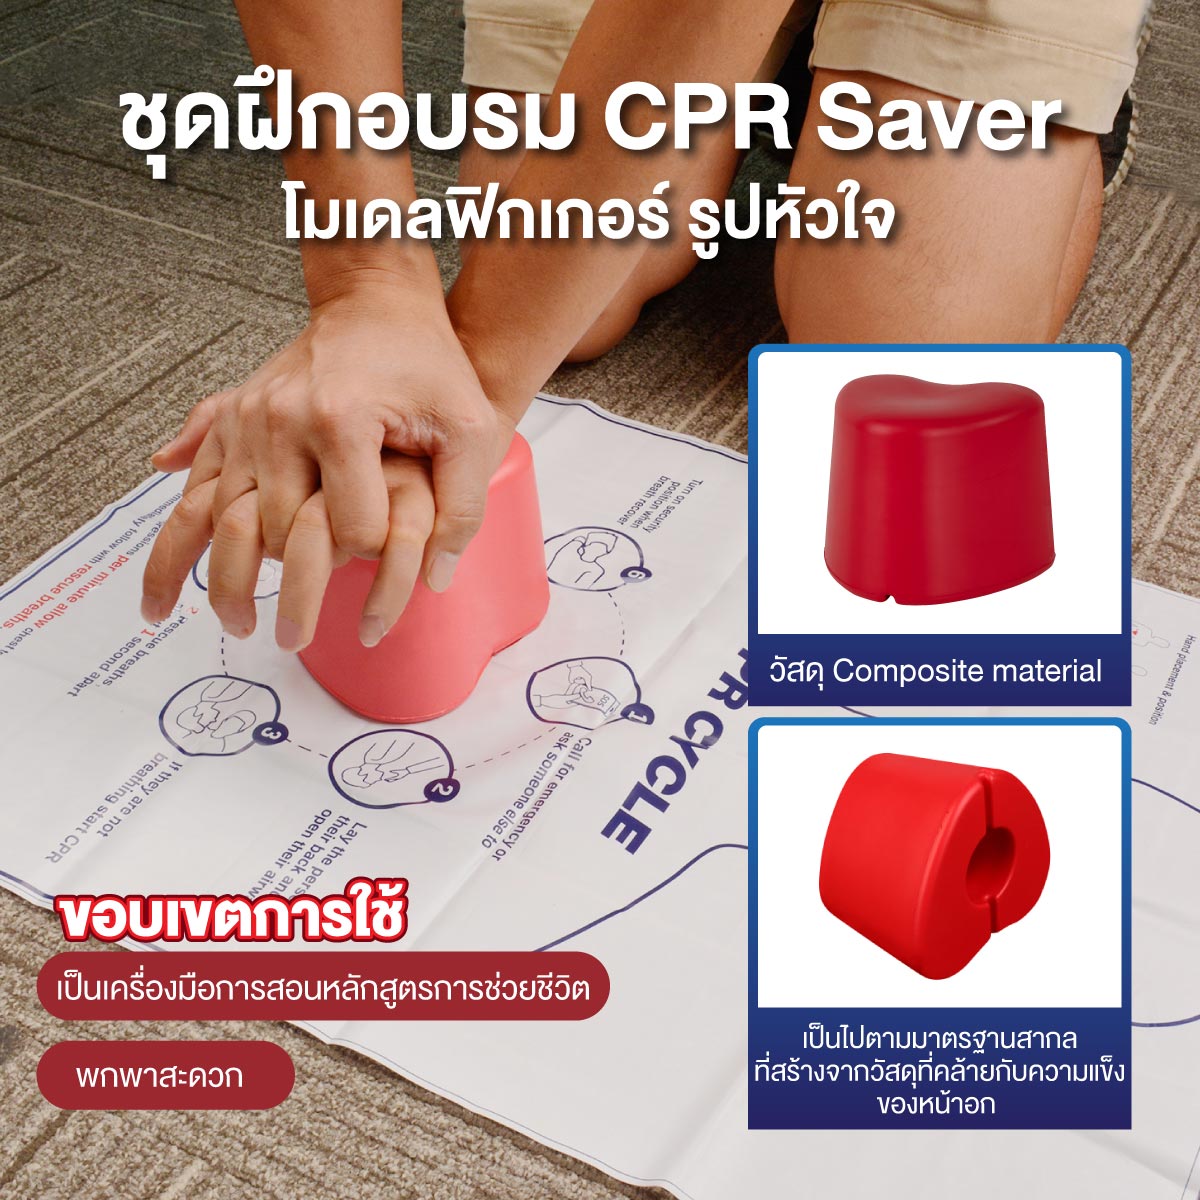 ชุดฝึกอบรม CPR Saver โมเดลฟิกเกอร์ รูปหัวใจ ขนาดเล็กสำหรับสอนการปฐมพยาบาล